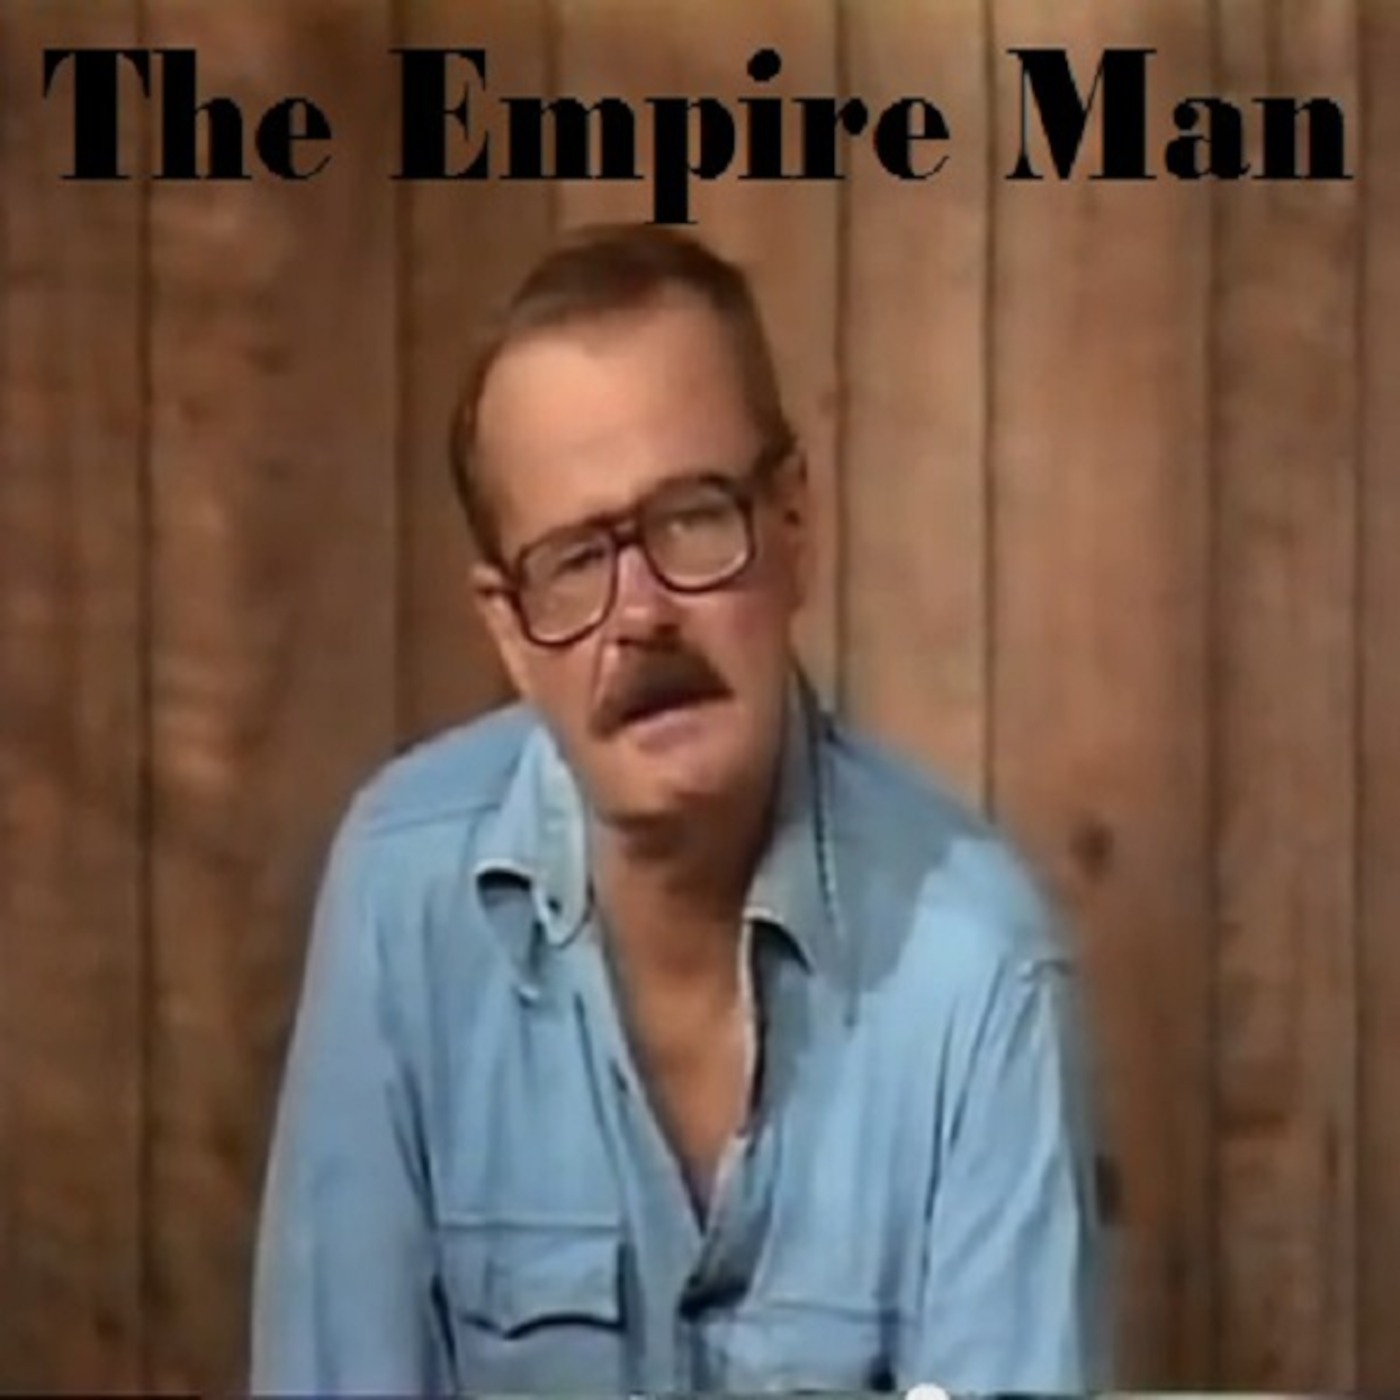 Episode 1 - The Empire Man